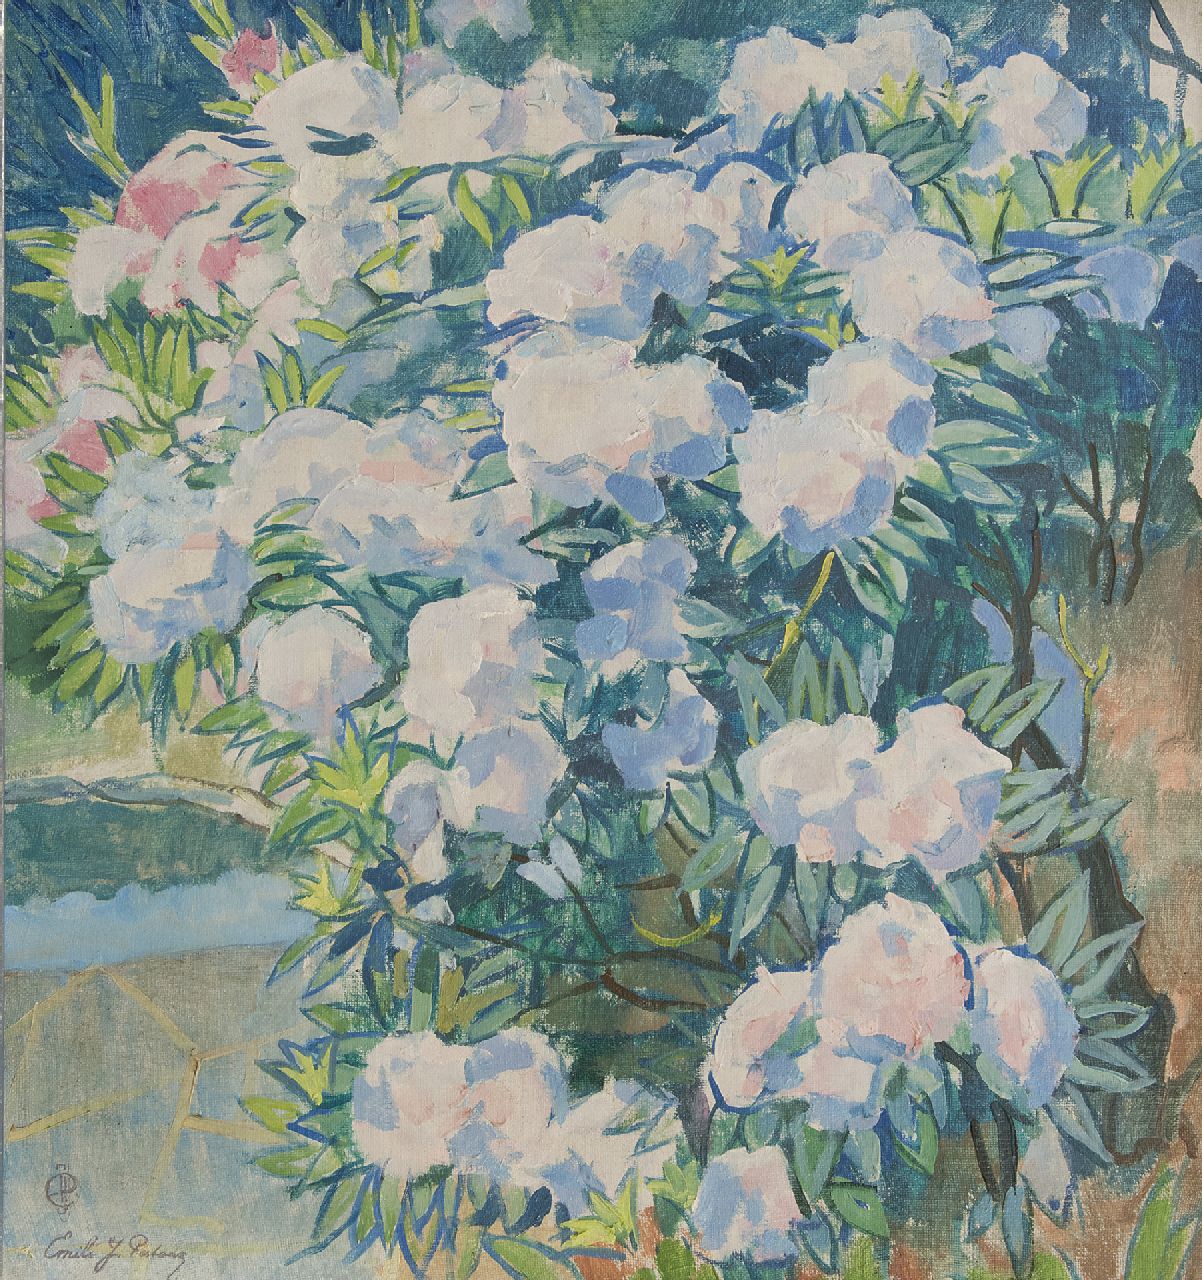 Patoux E.J.  | Emile Joseph Patoux | Schilderijen te koop aangeboden | Rhododendrons, olieverf op doek 75,8 x 70,5 cm, gesigneerd linksonder voluit en mon.